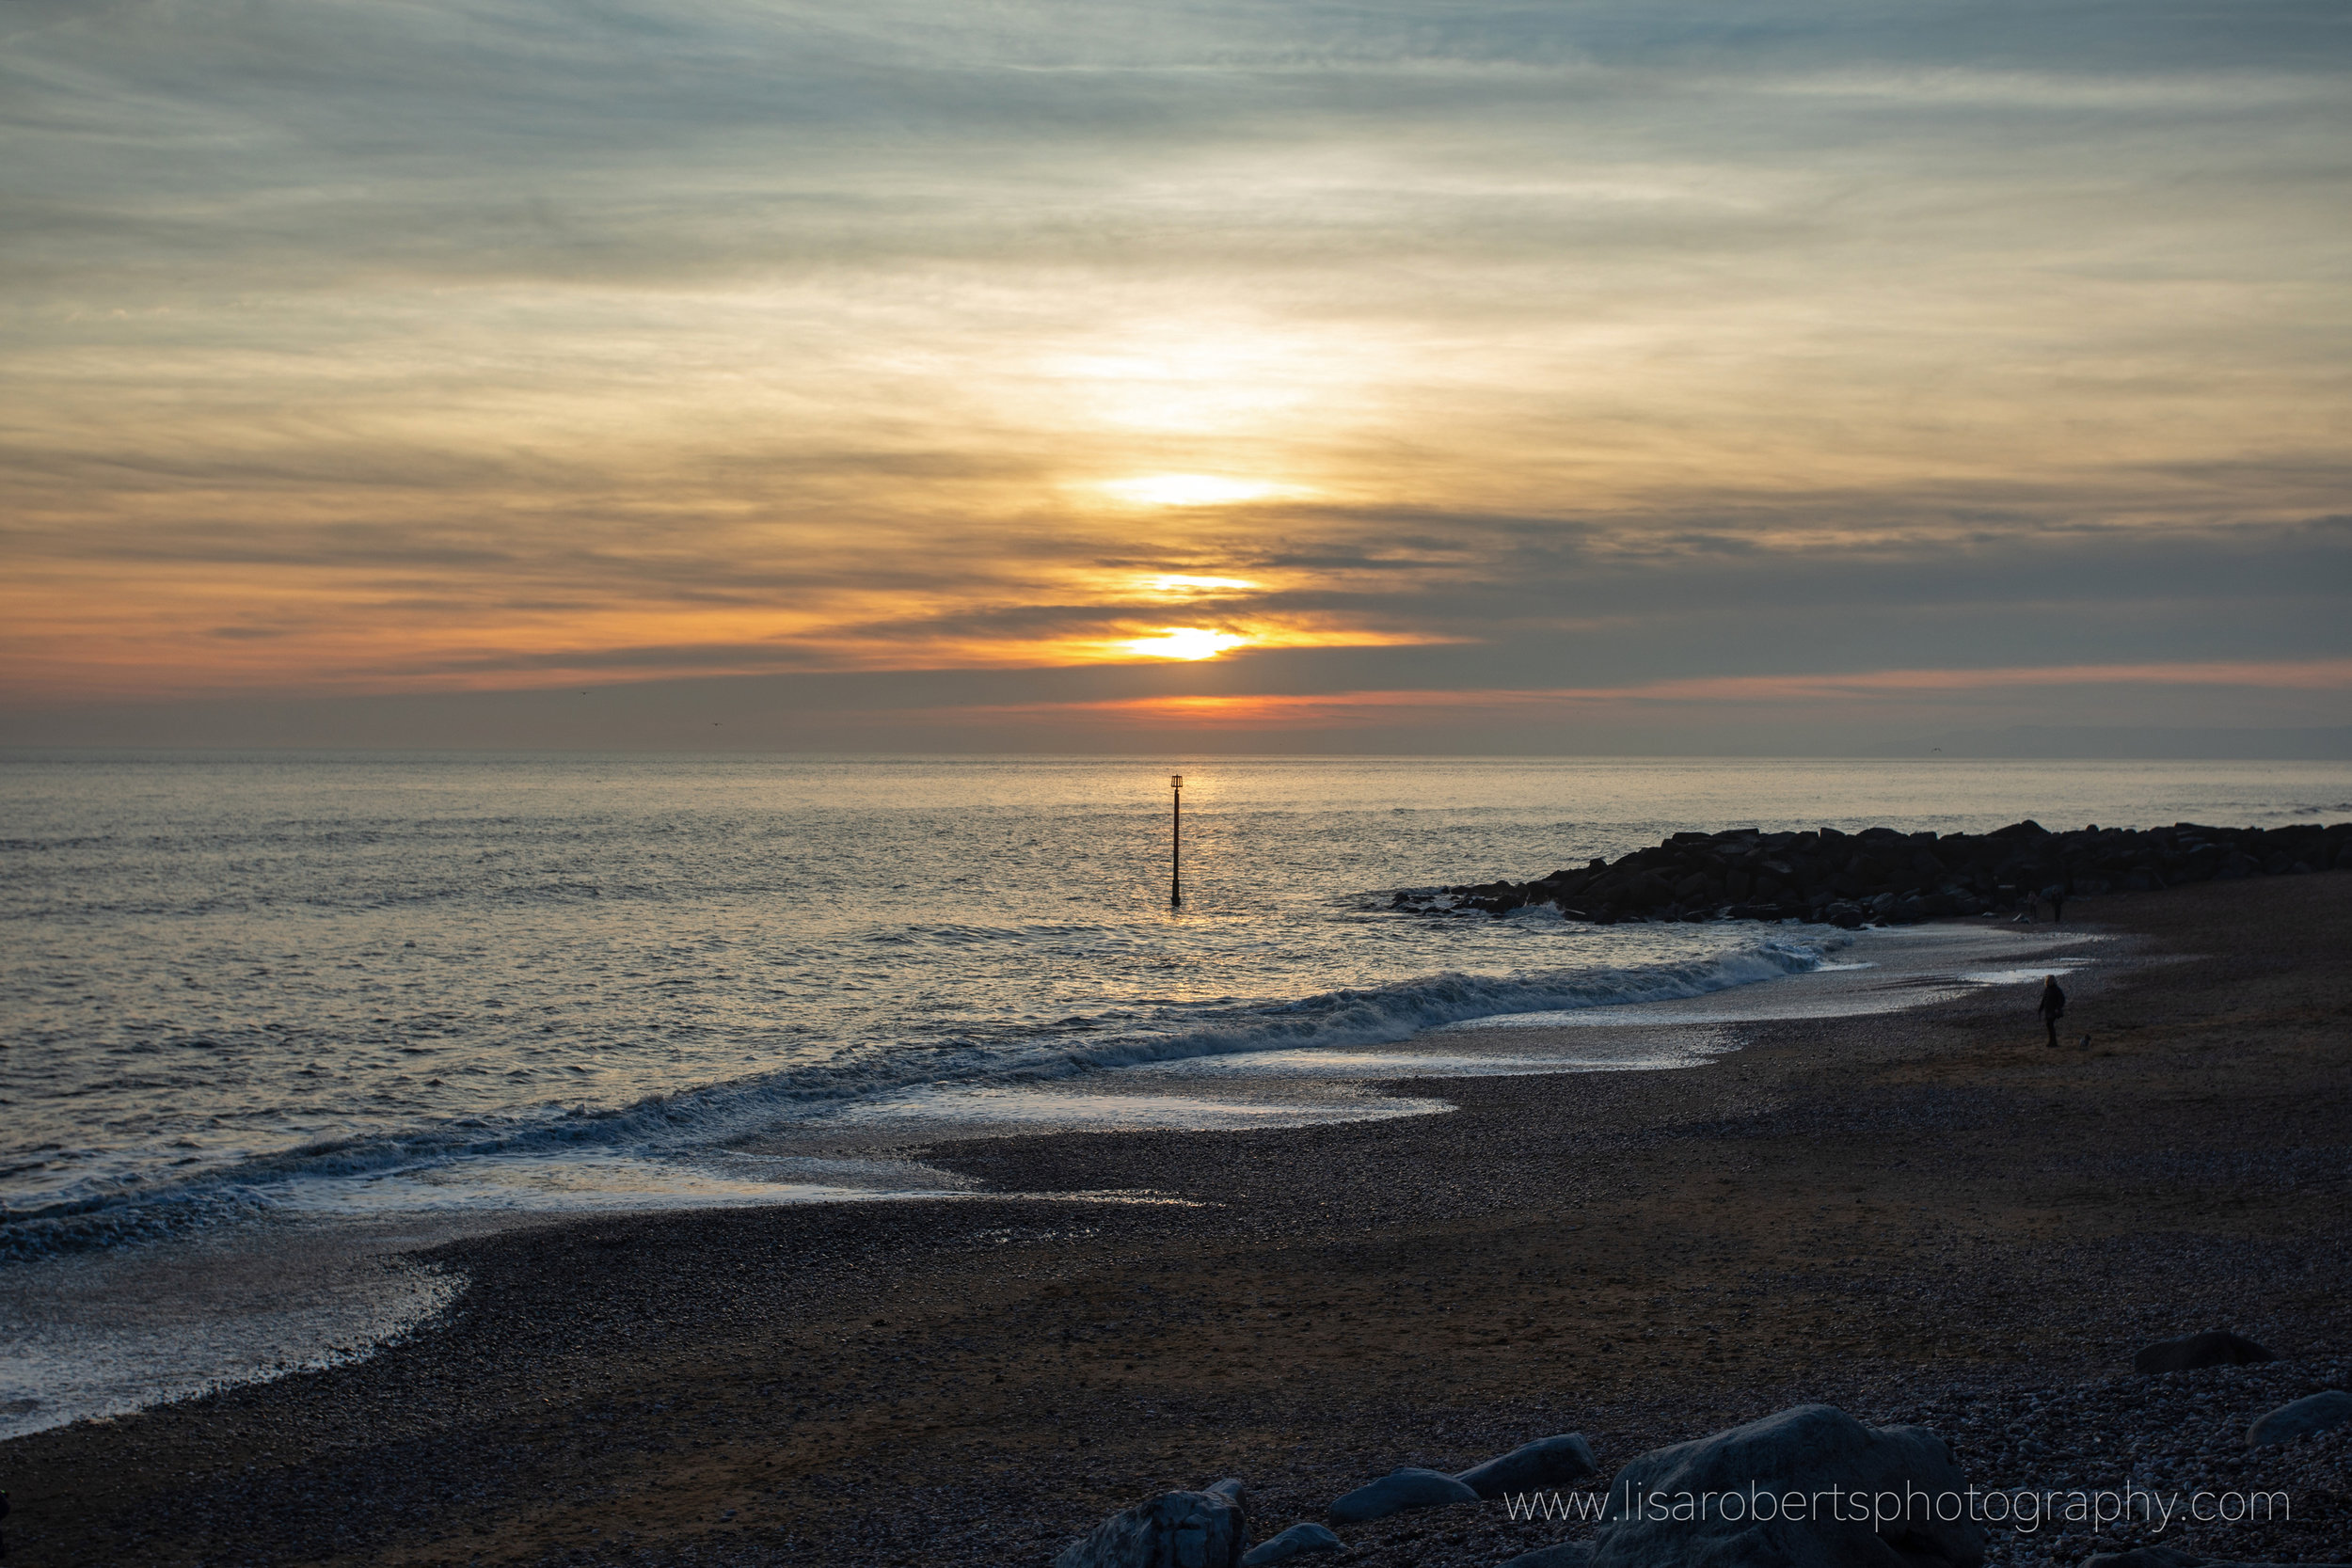  West Bay Sunset, Dorset England 